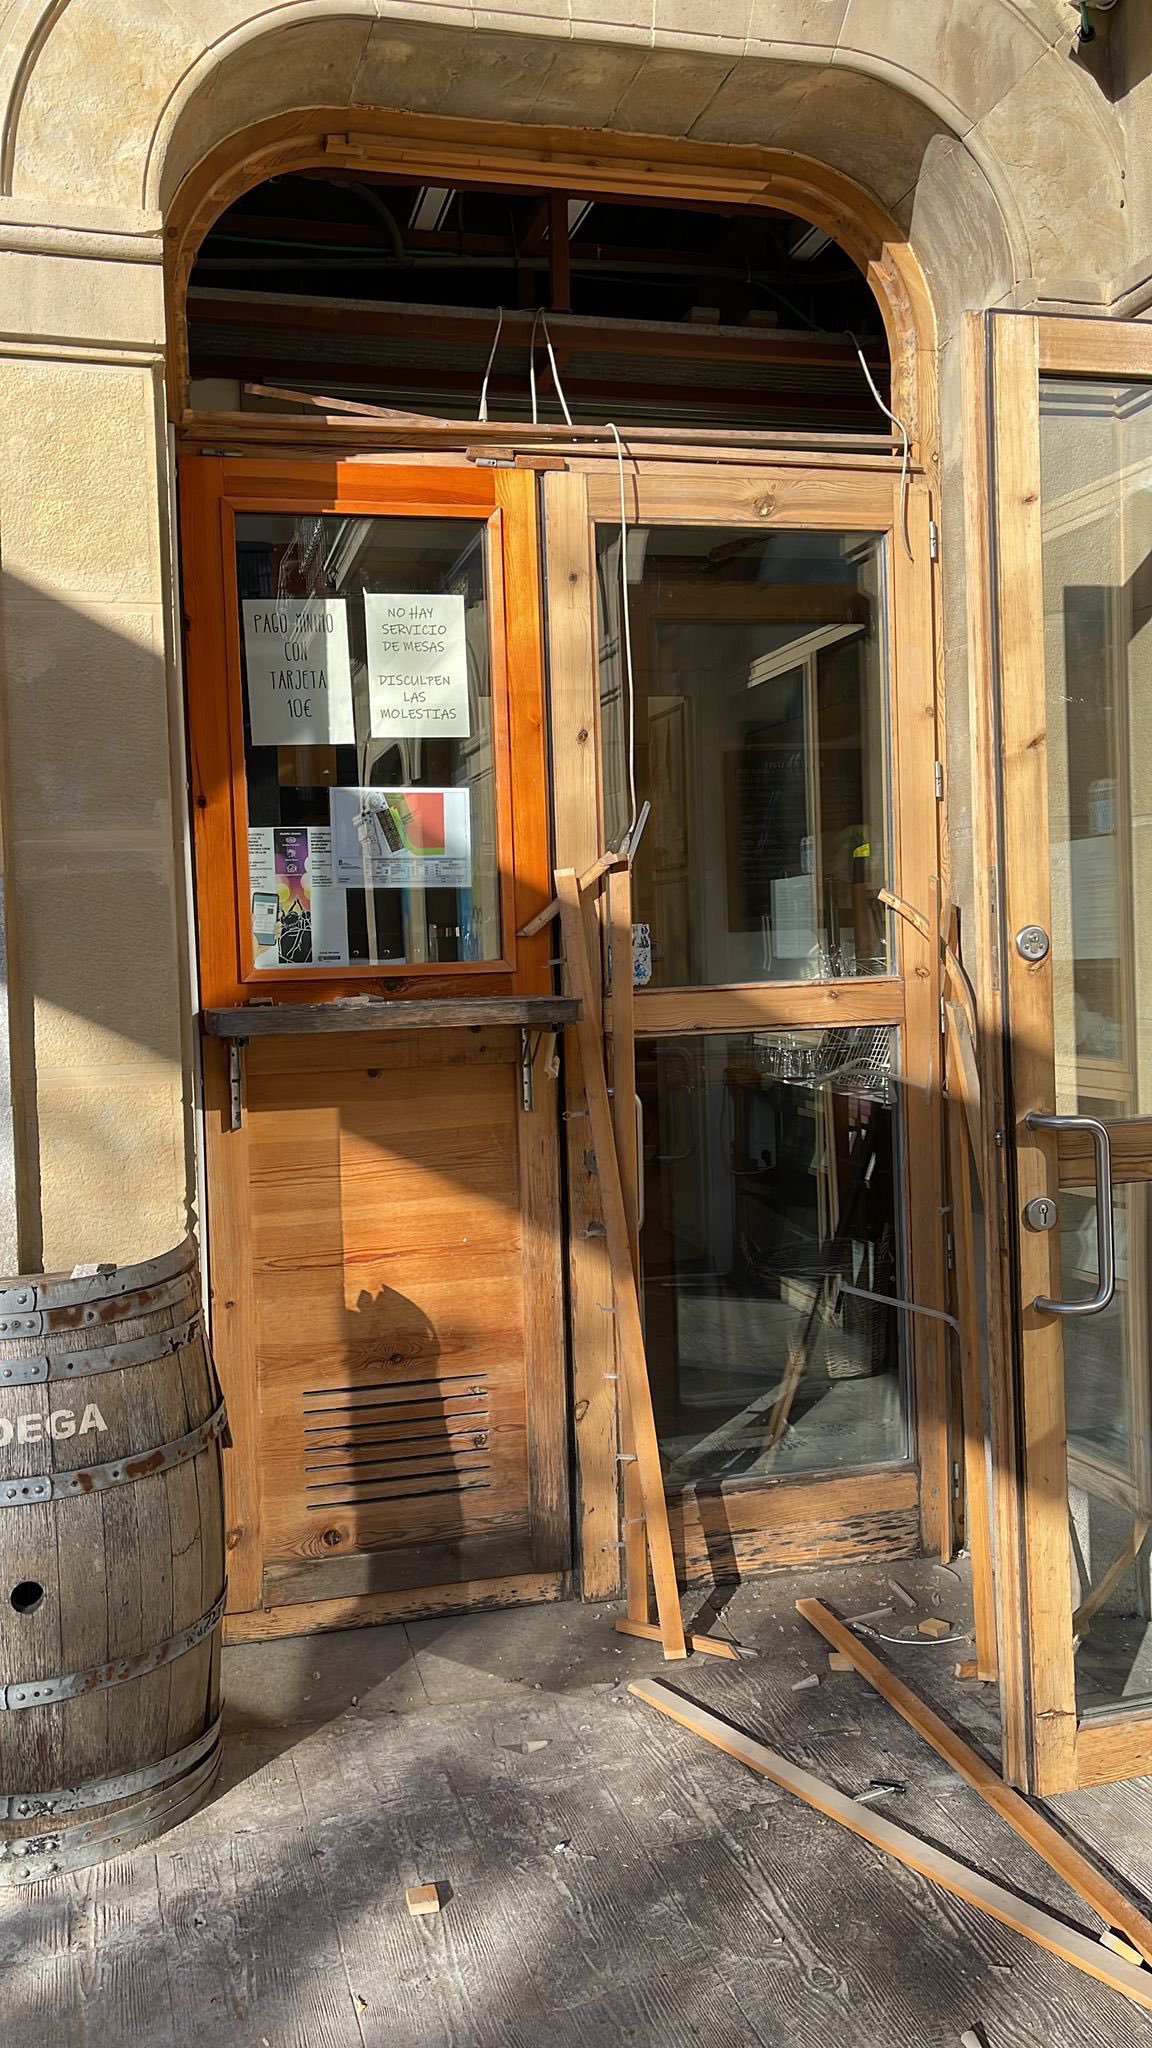 Kaxilda2 - Dos días de ataques a la librería Kaxilda de Donostia